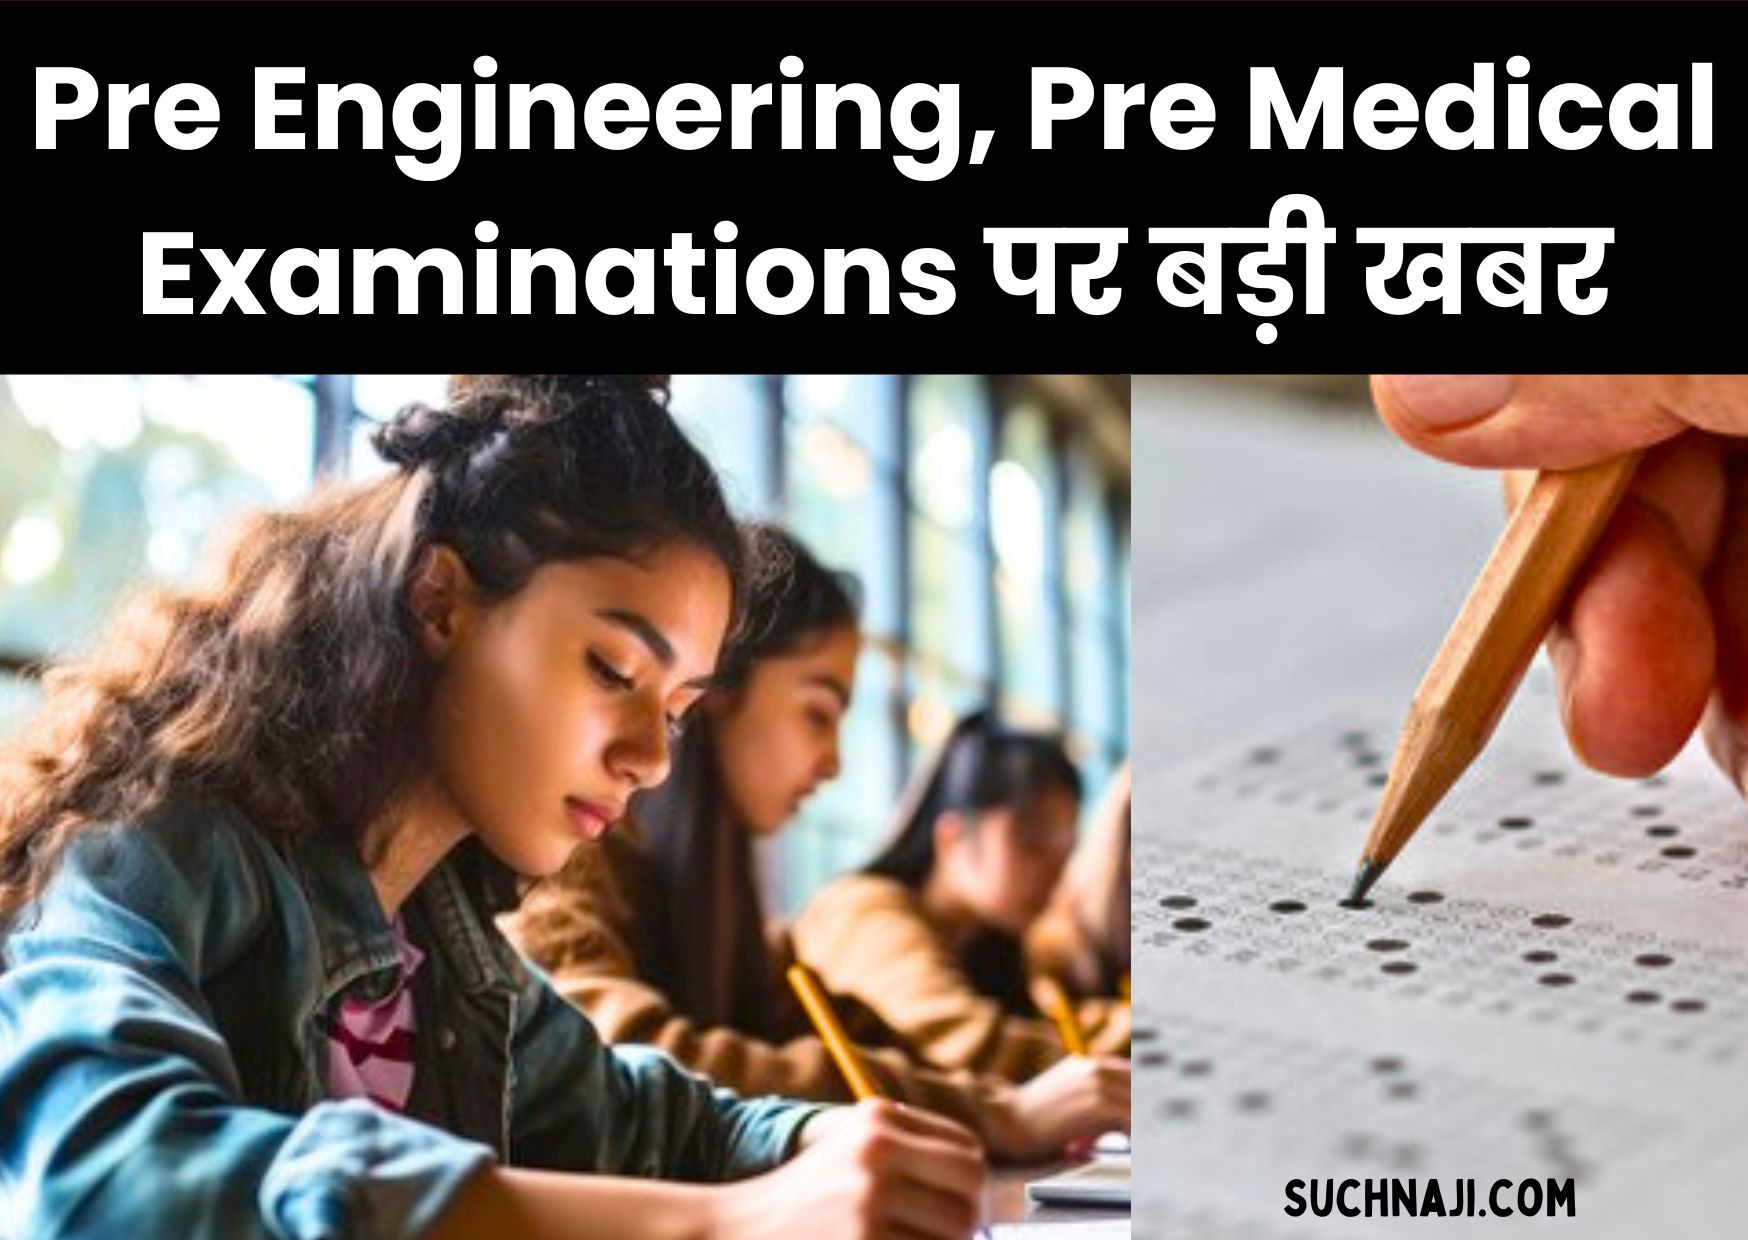 Pre Engineering, Pre Medical Examinations की तैयारी के लिए 1 जुलाई तक करें आवेदन